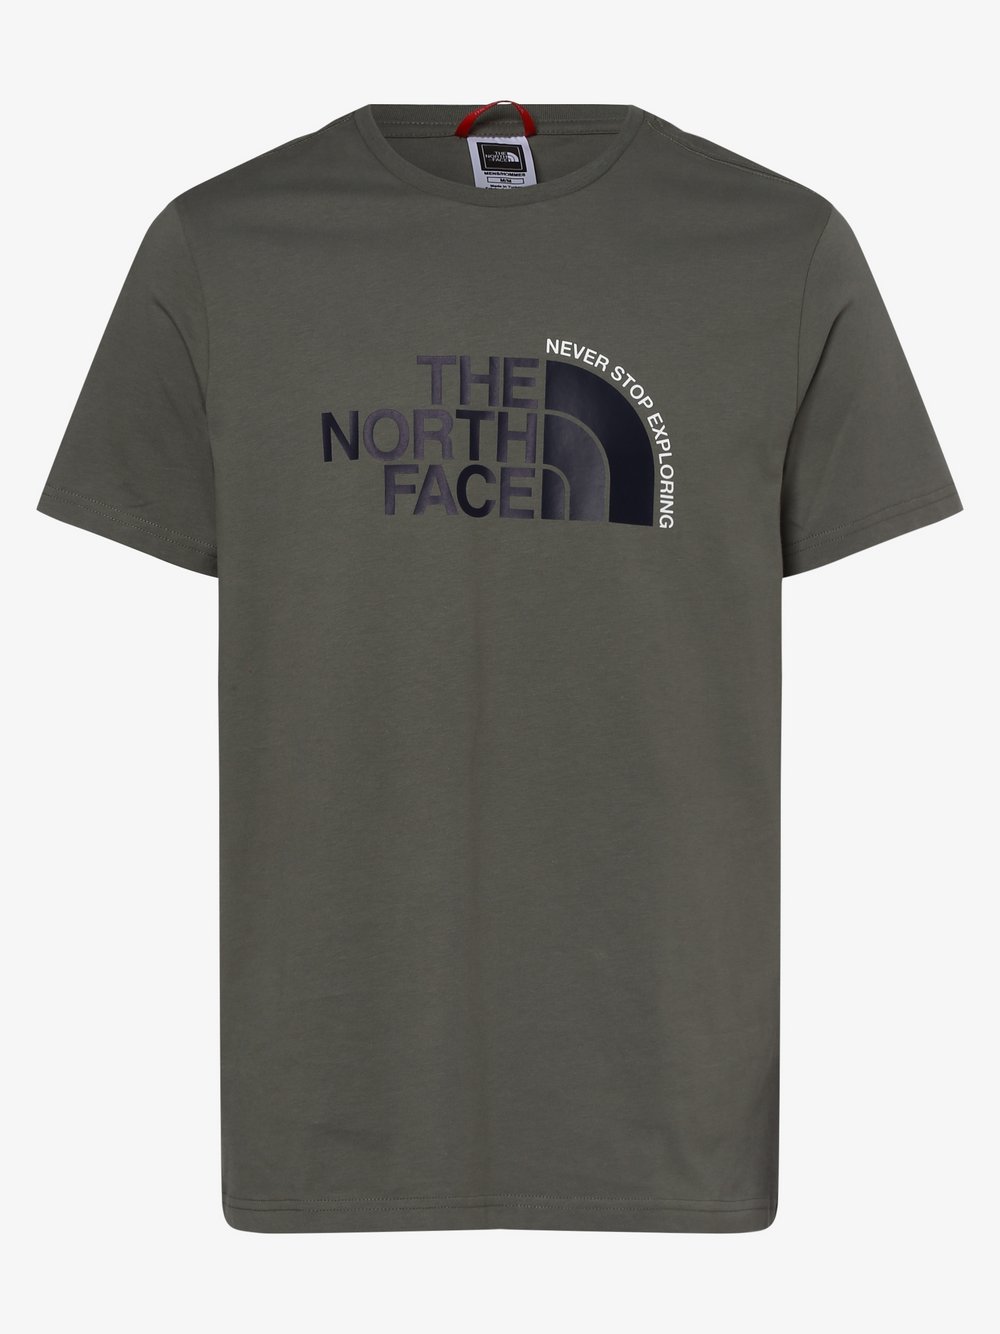 The North Face - T-shirt męski, zielony